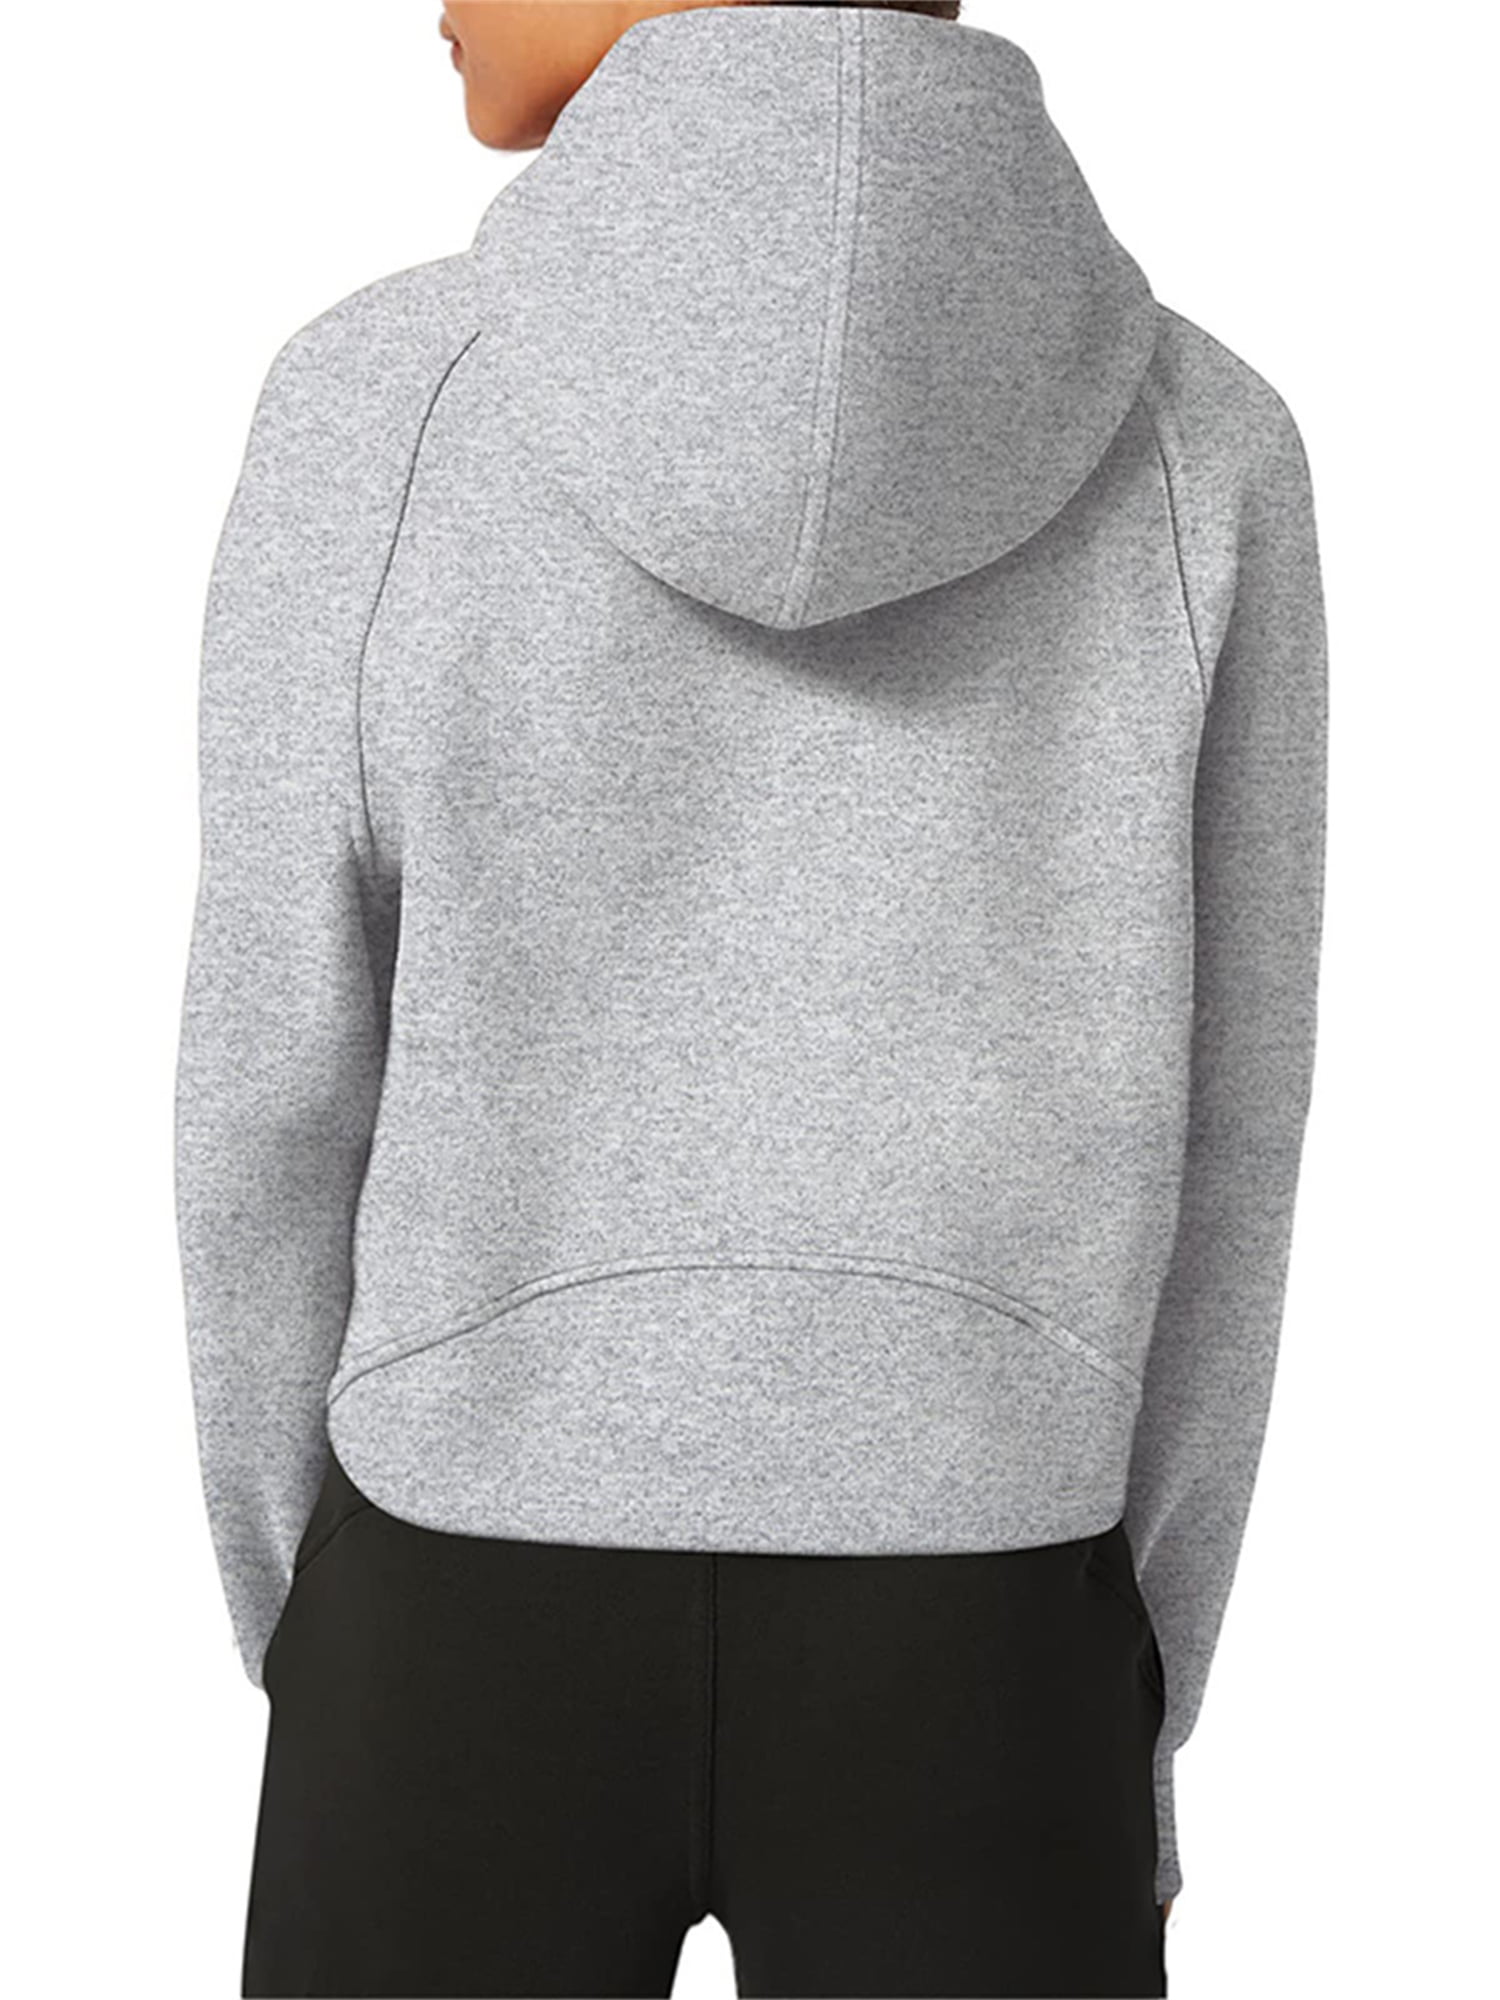 Sunisery Women's Hoodies Fleece Lined Collar Pullover 1/2 Zipper